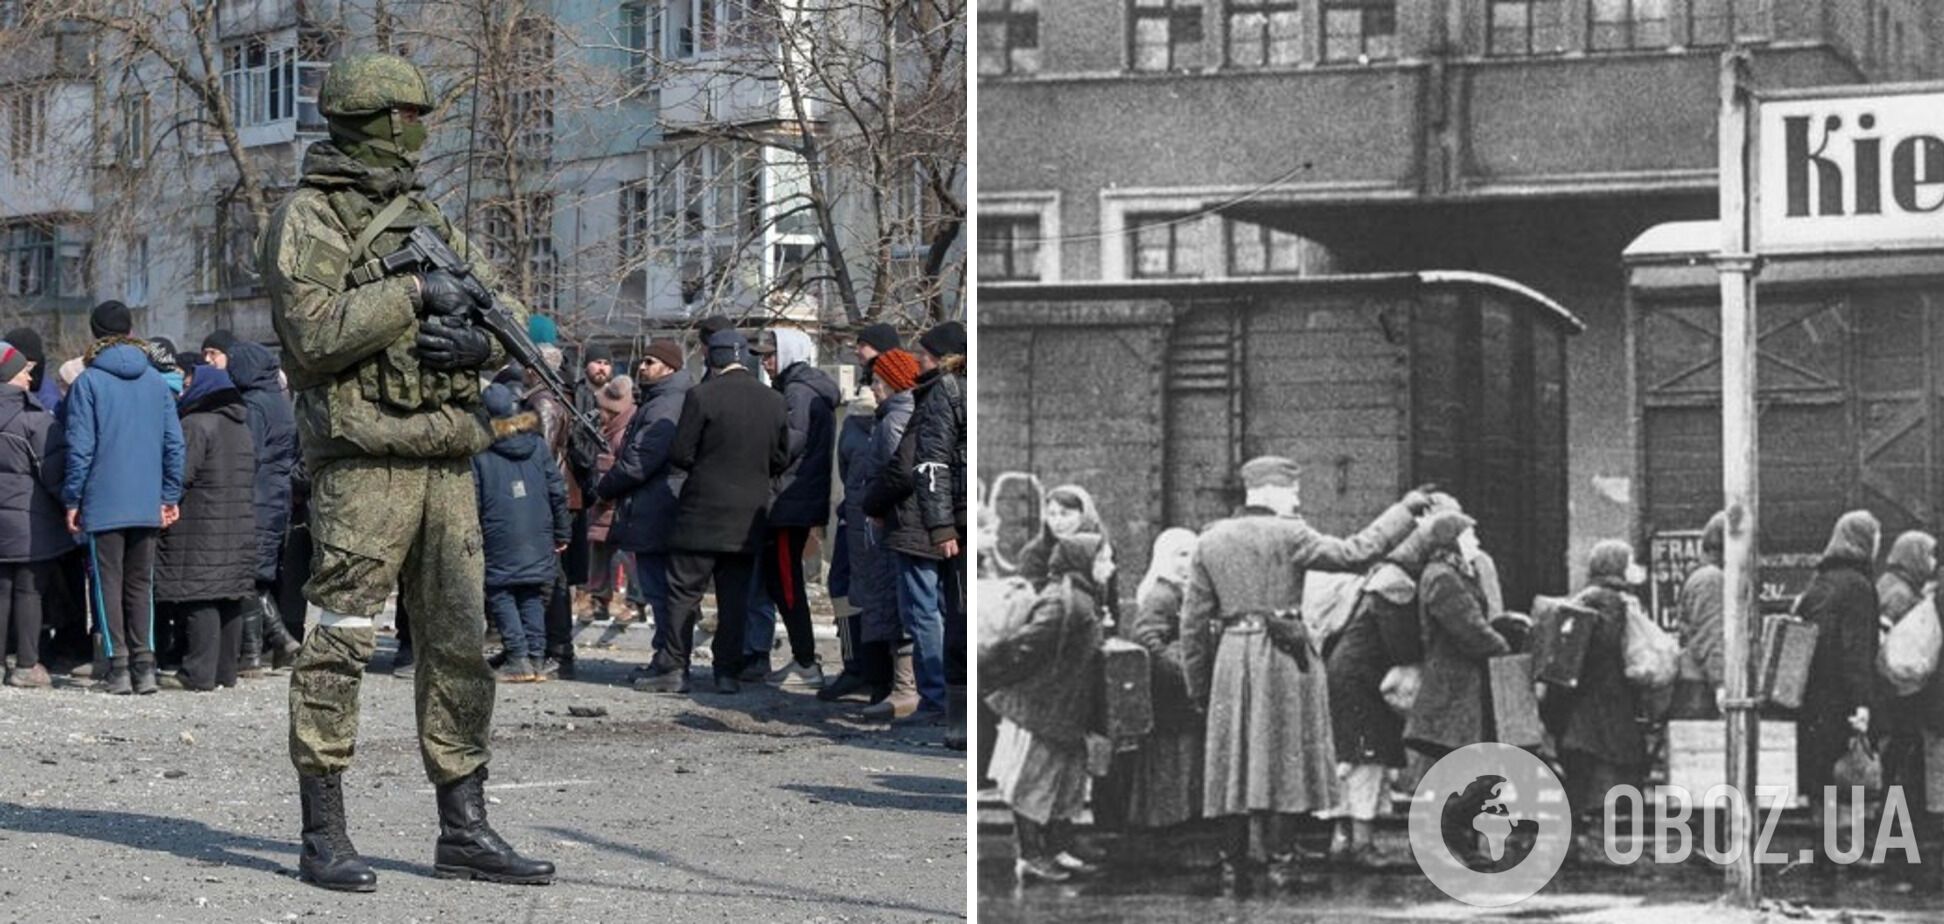 Между этими фото 80 лет. Слева – российские фашисты вывозят украинцев в РФ, справа – немецкие нацисты вывозят украинцев в Германию